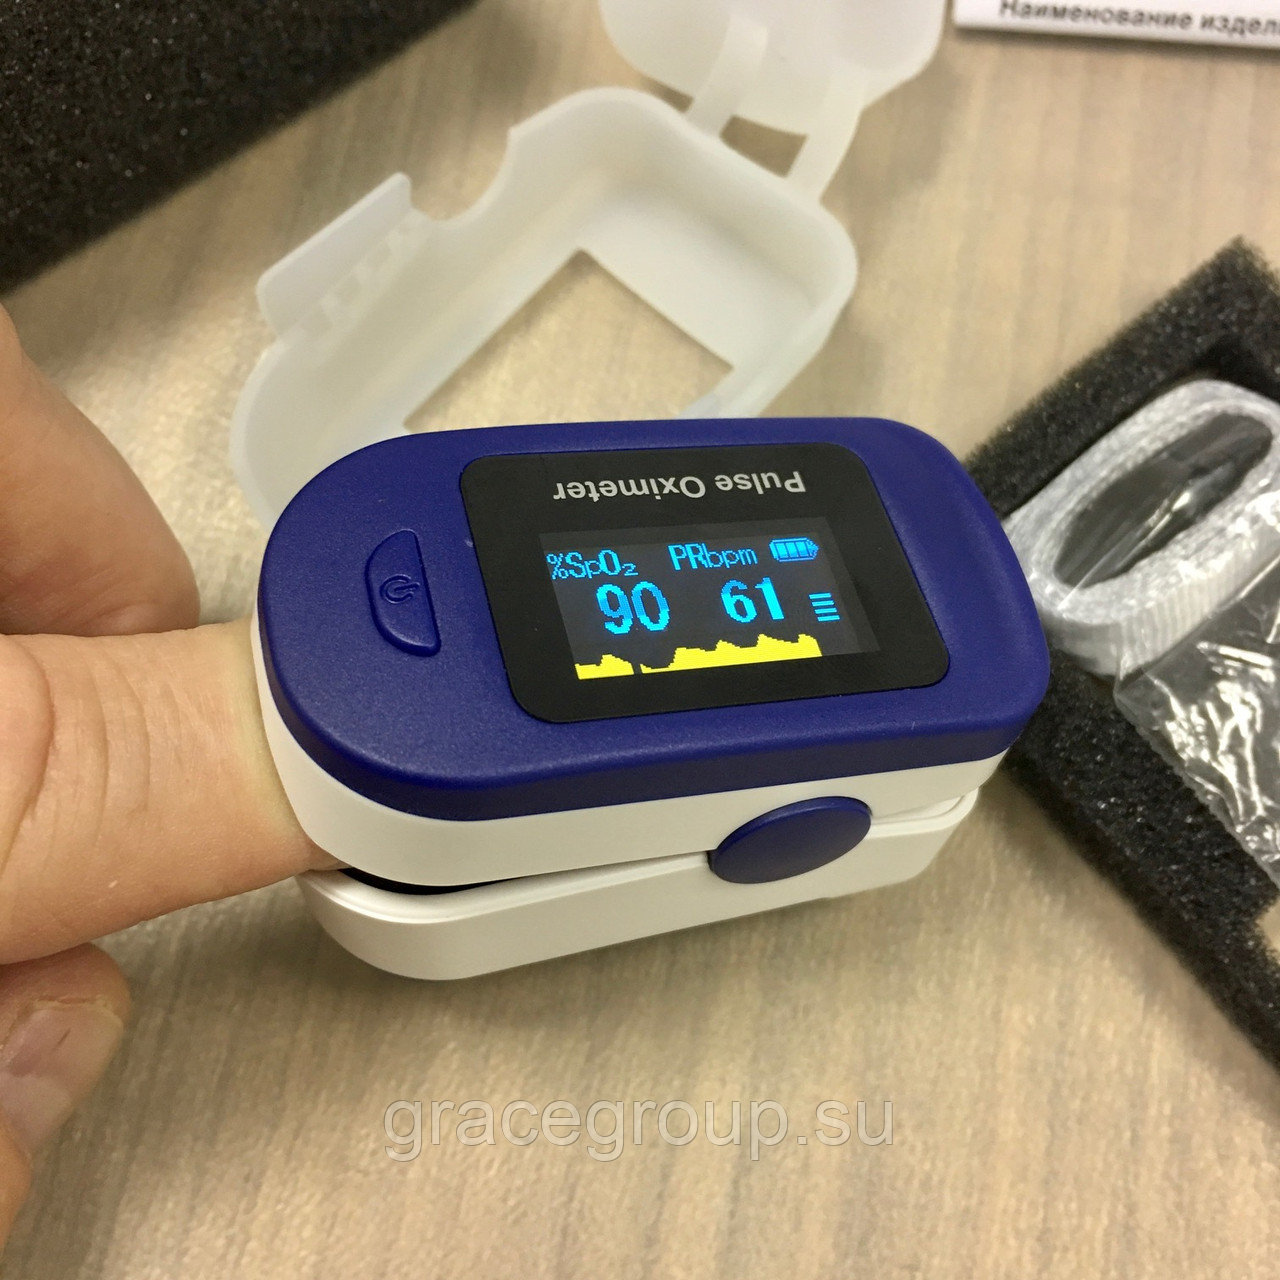 Оксиметр неинвазивный медицинский прибор, применяемый для определения уровня кислорода в капиллярной крови и частоты сердечных сокращений